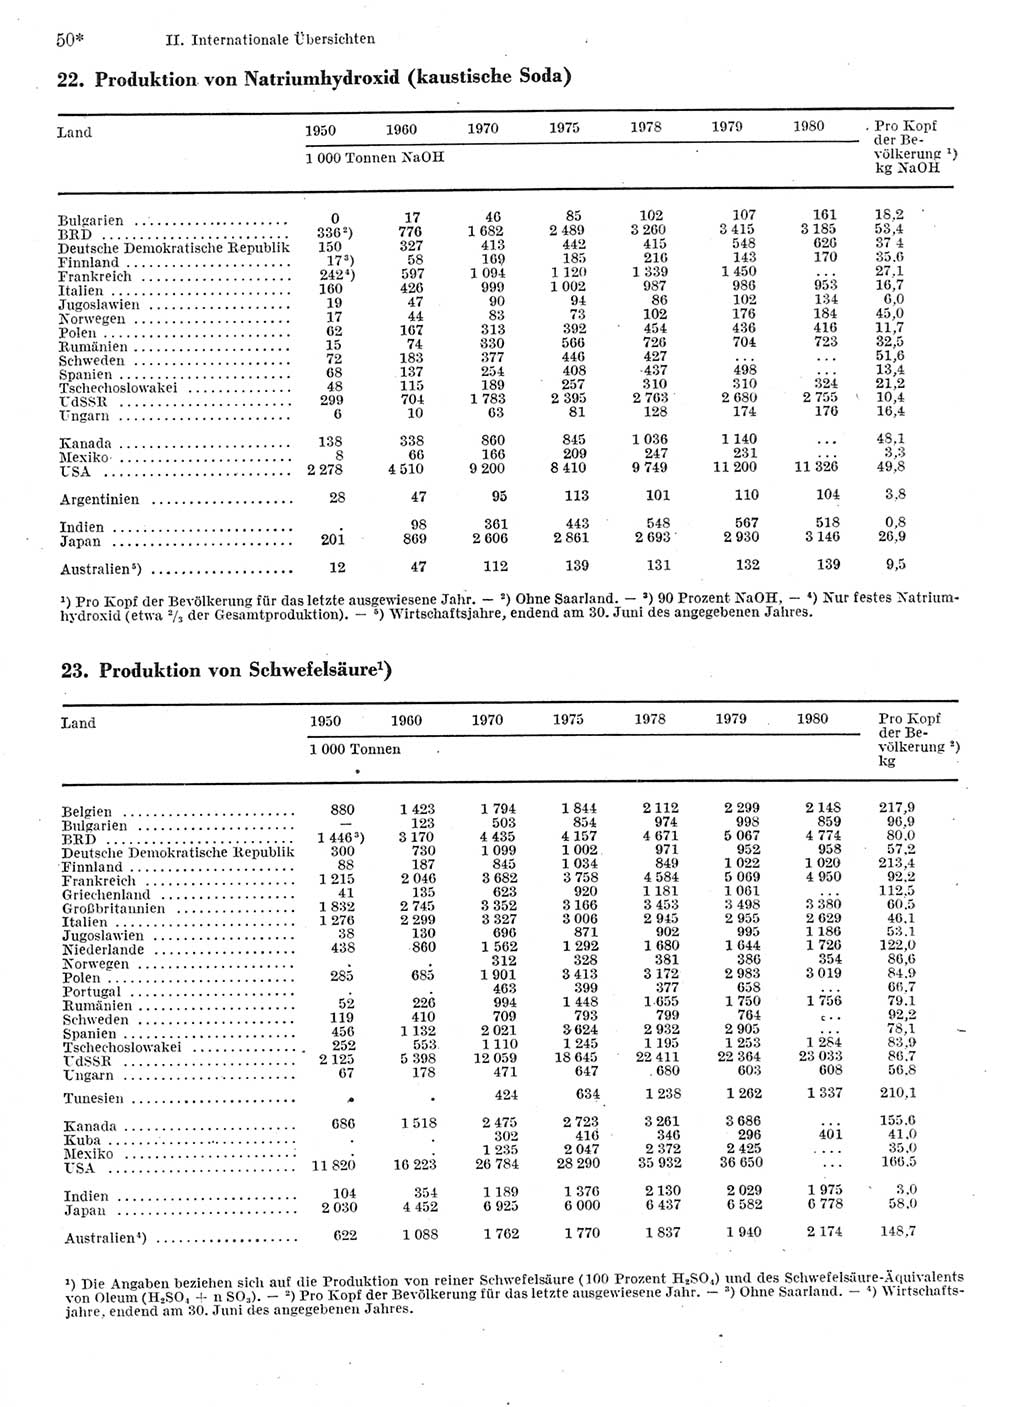 Statistisches Jahrbuch der Deutschen Demokratischen Republik (DDR) 1982, Seite 50 (Stat. Jb. DDR 1982, S. 50)